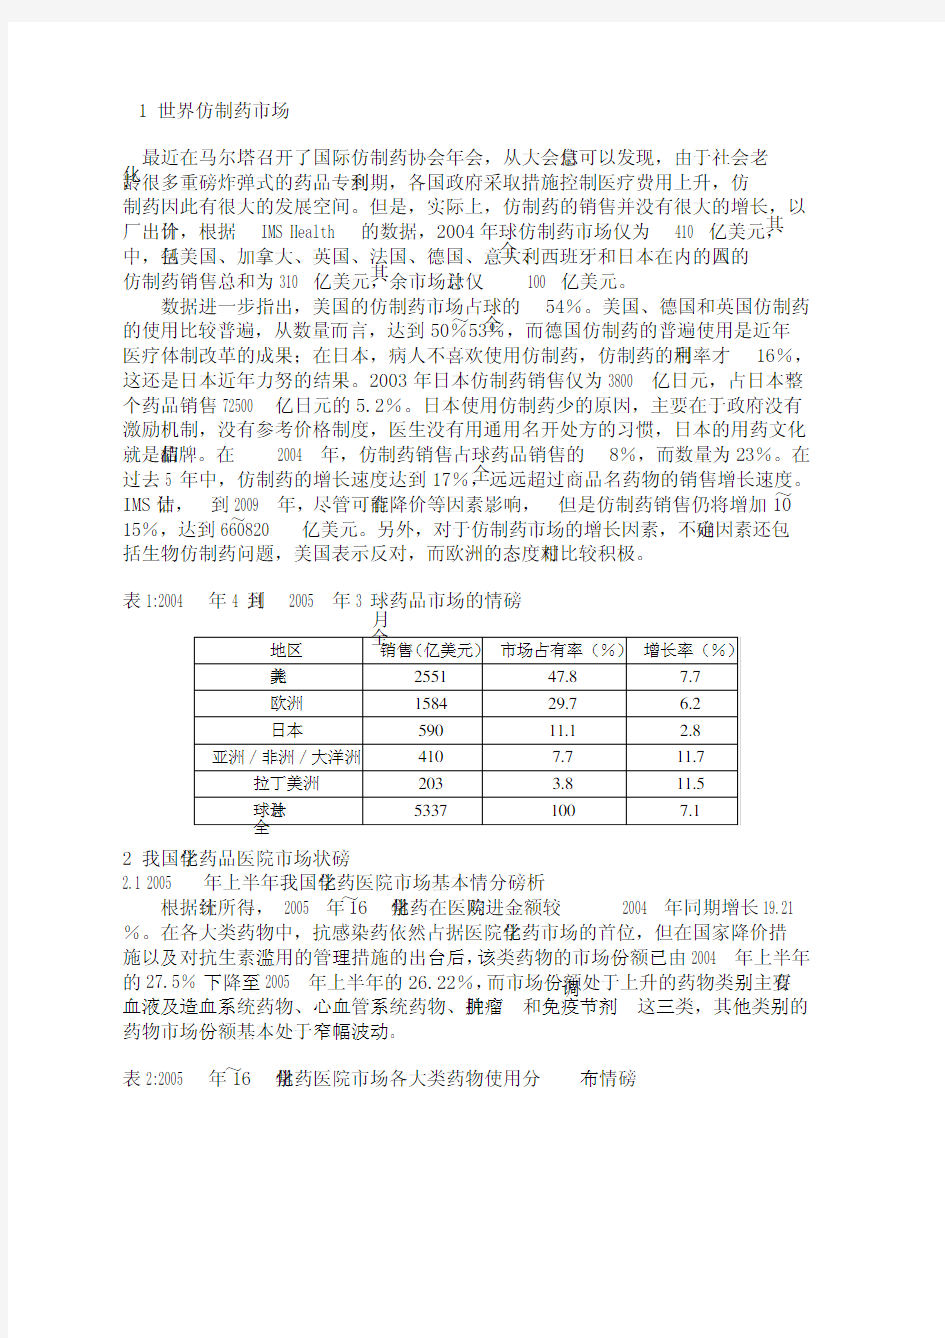 2005年中国仿制药研究与市场分析